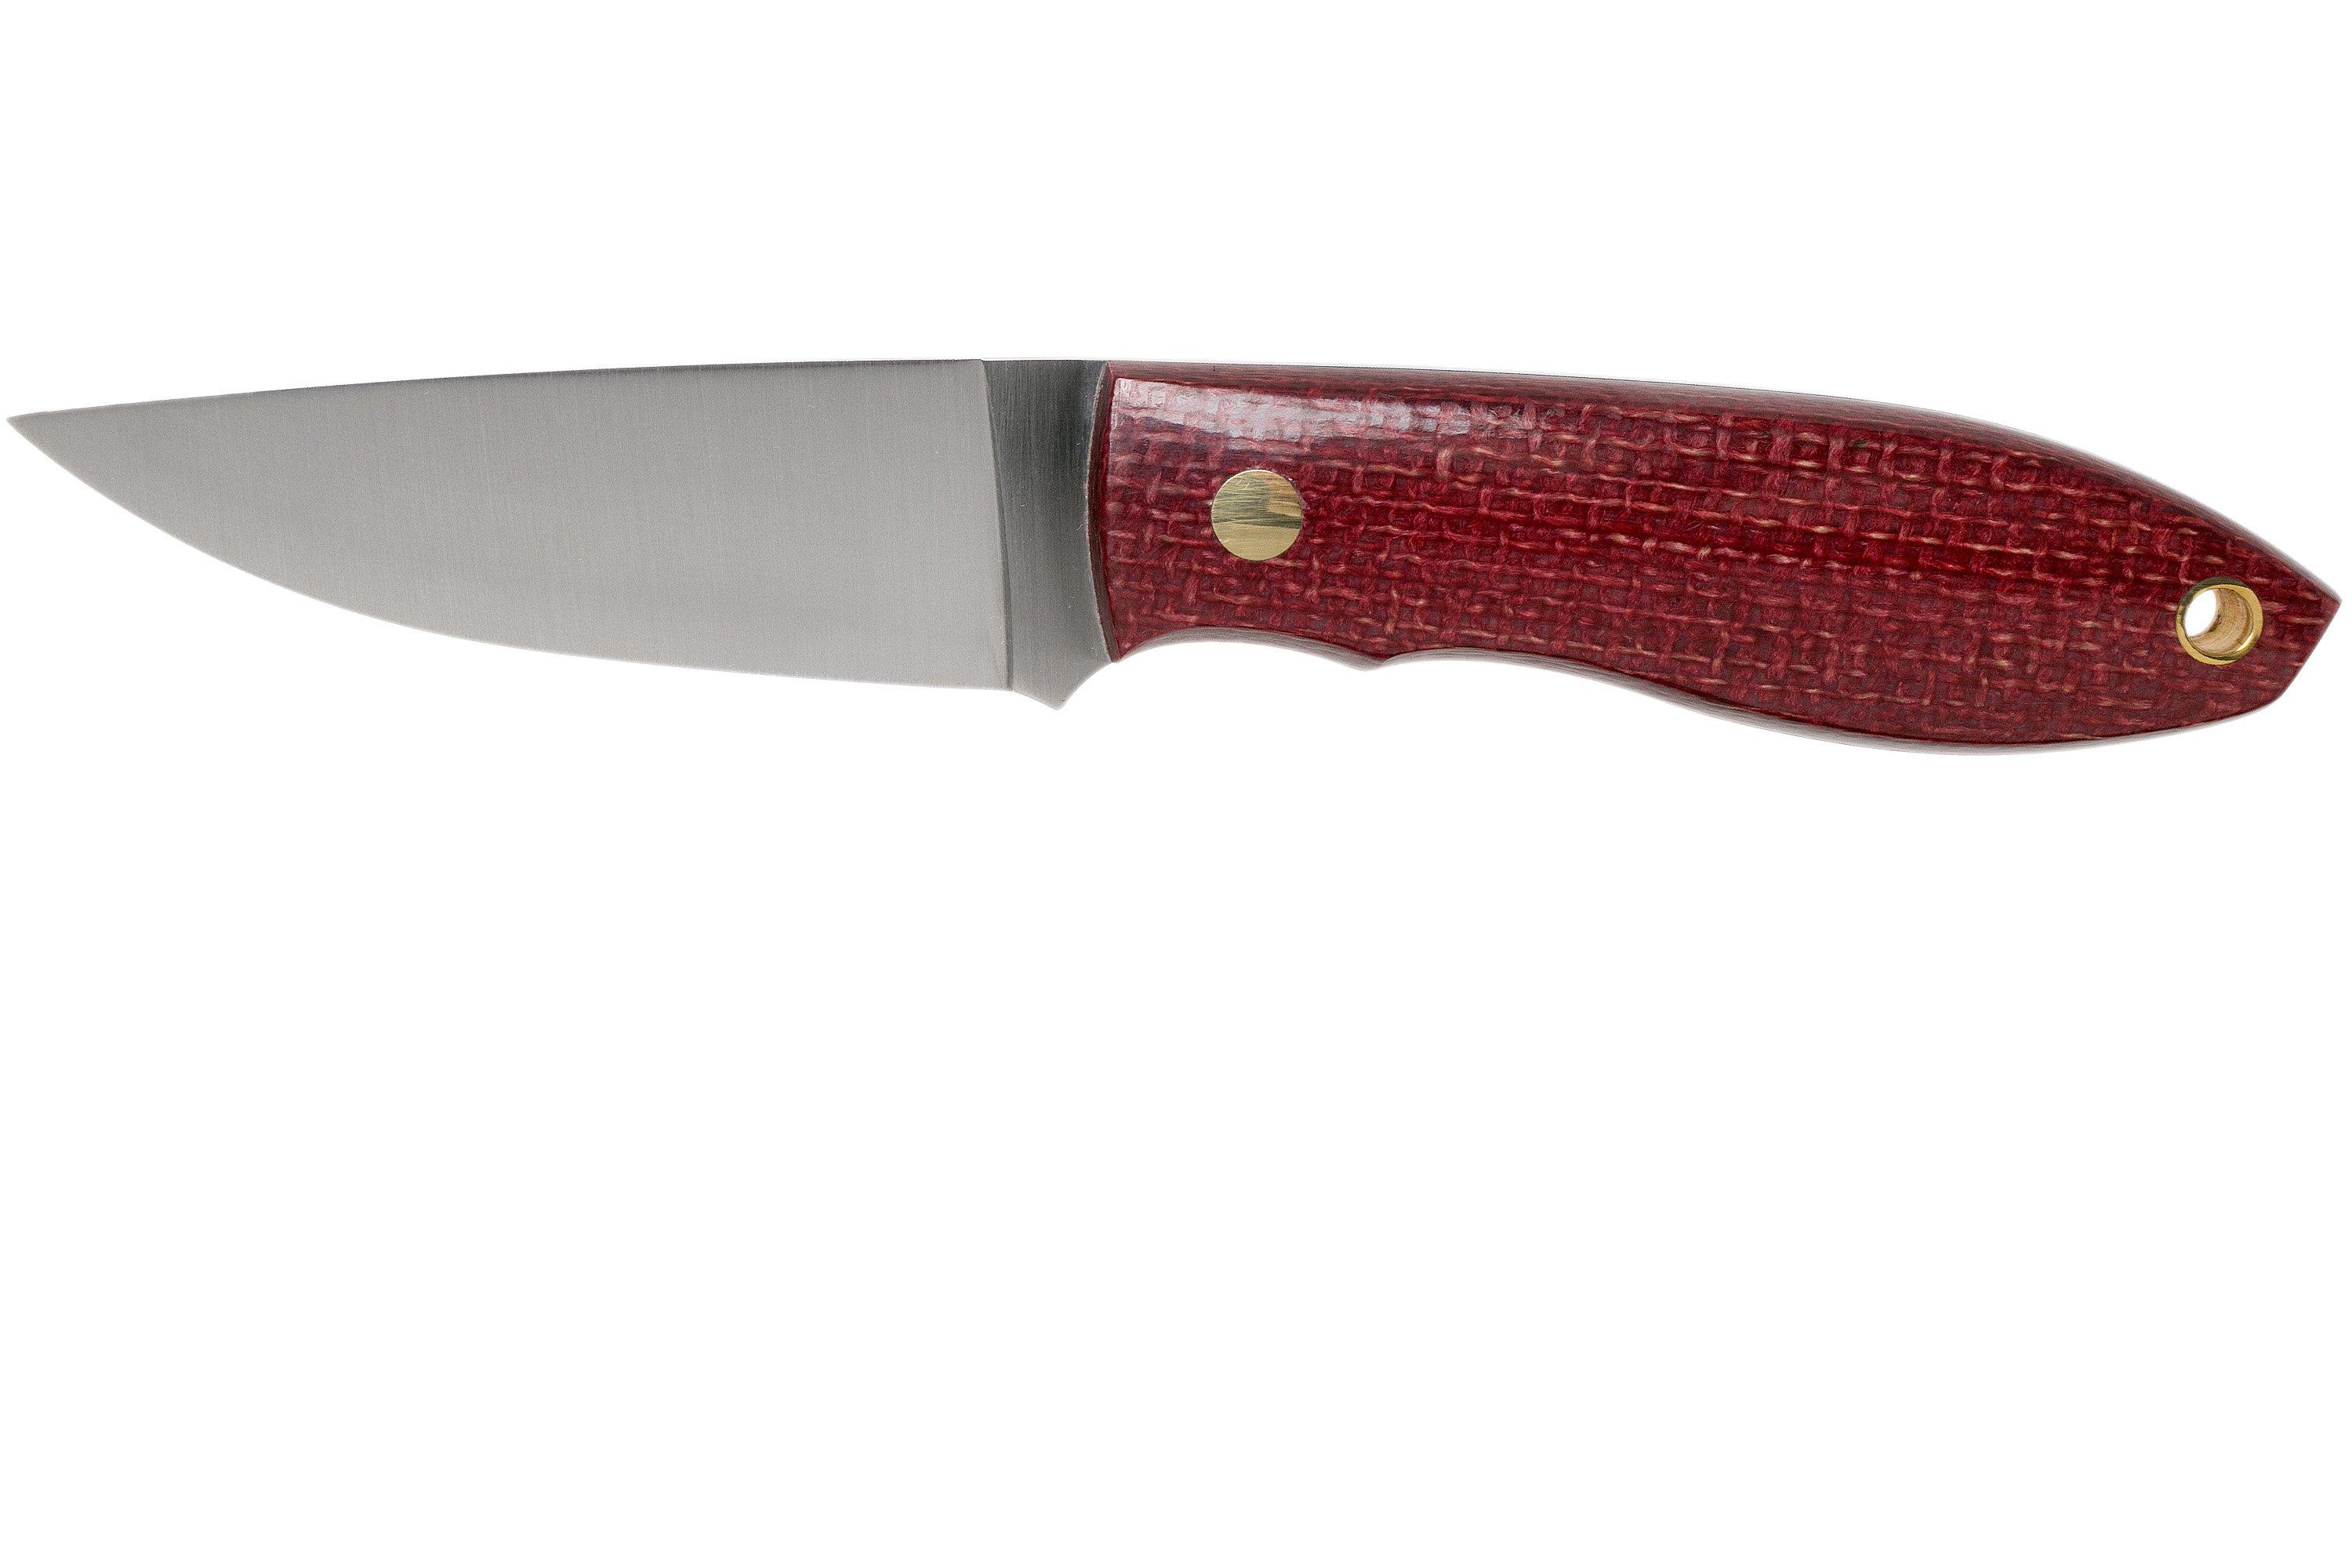 NKD2030 01 Nordic Knife Design